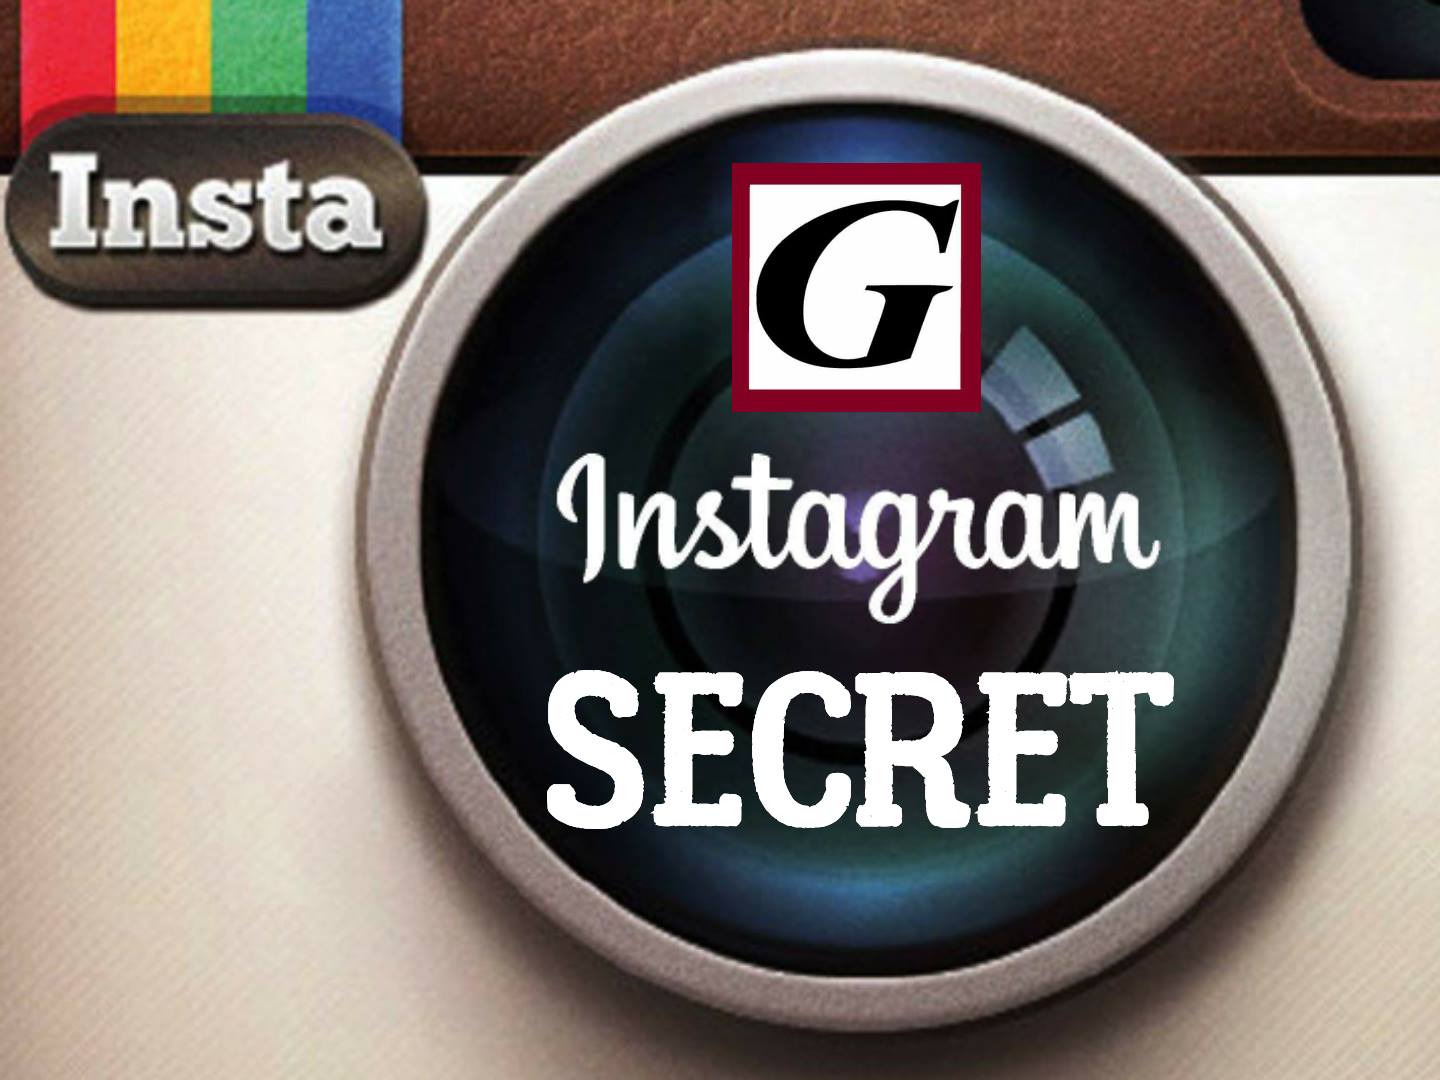 Vedere le Instagram Stories senza apparire tra gli utenti che hanno visualizzato